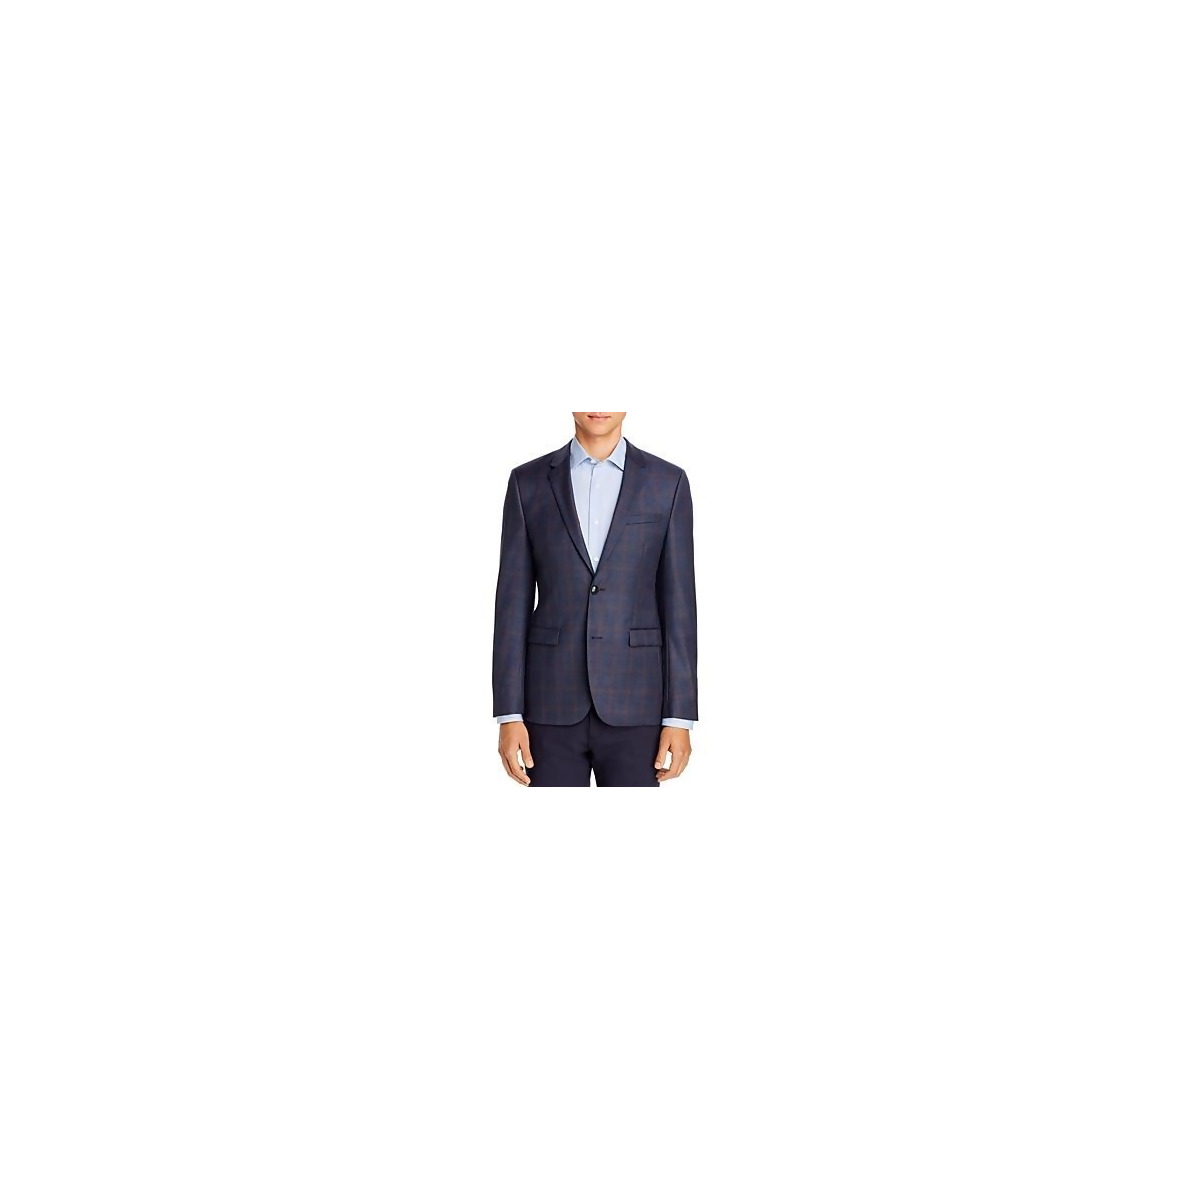 Hugo Boss Men's Plaid Suit Jacket